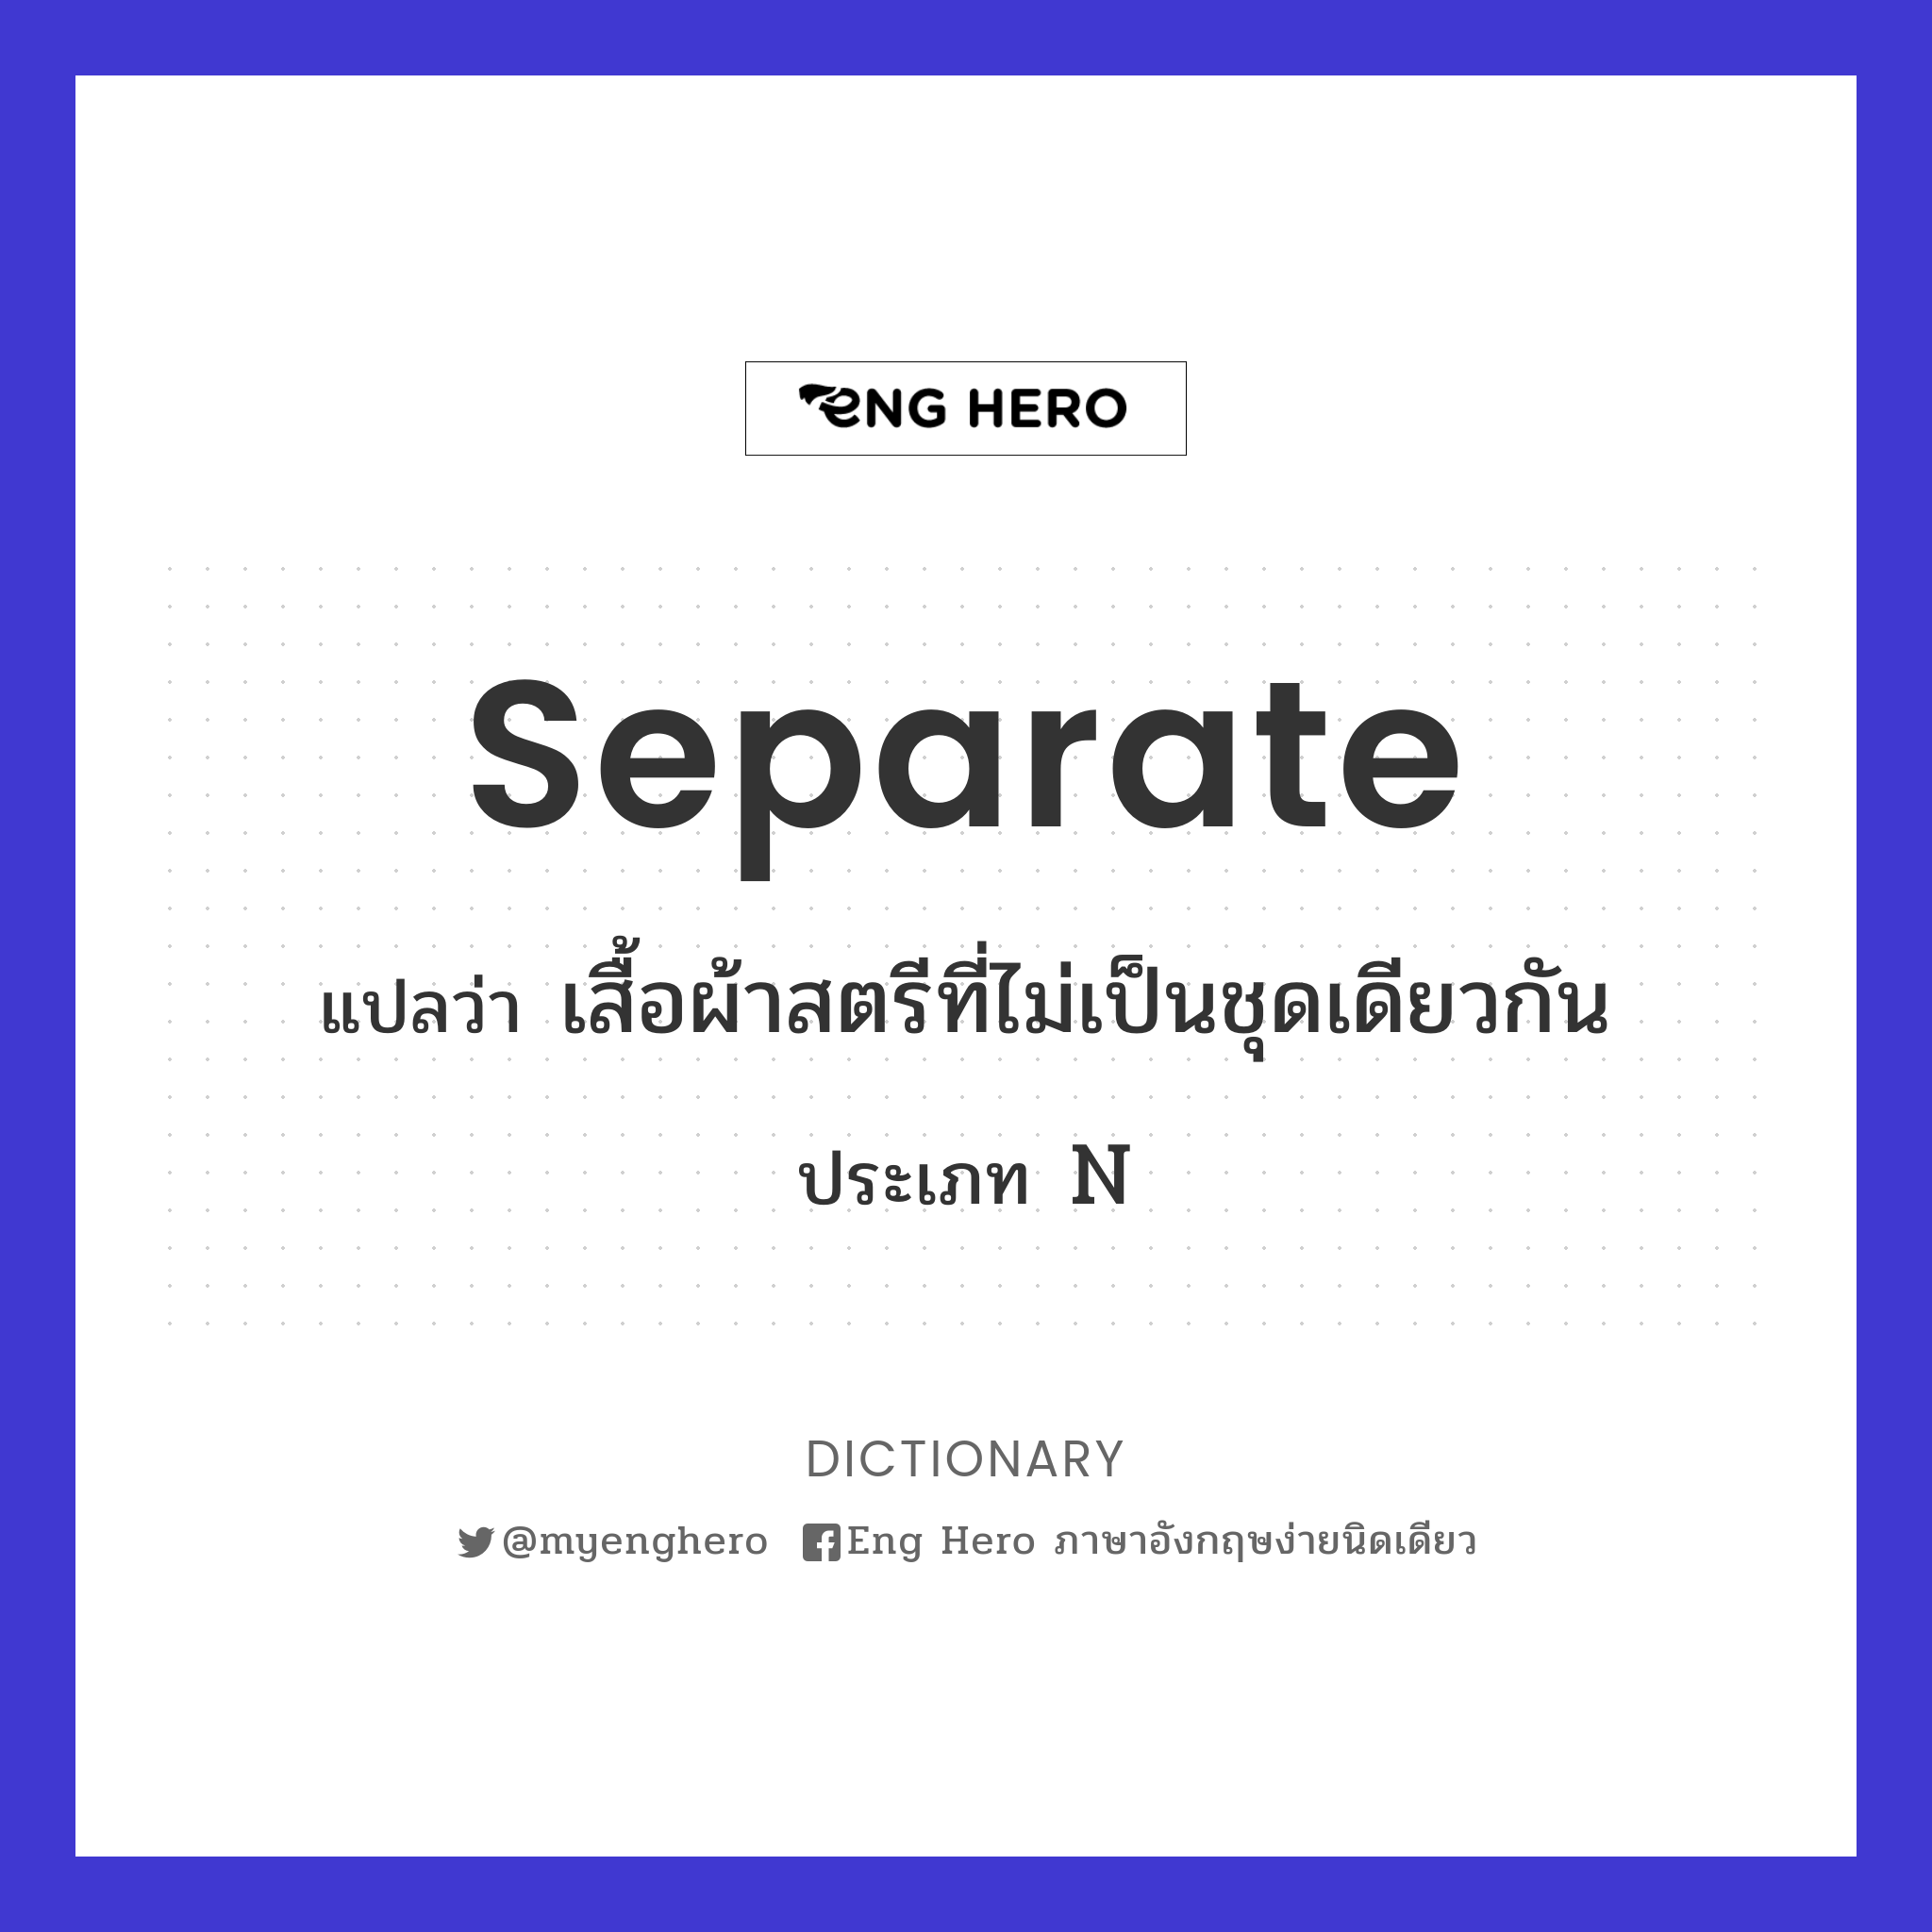 separate